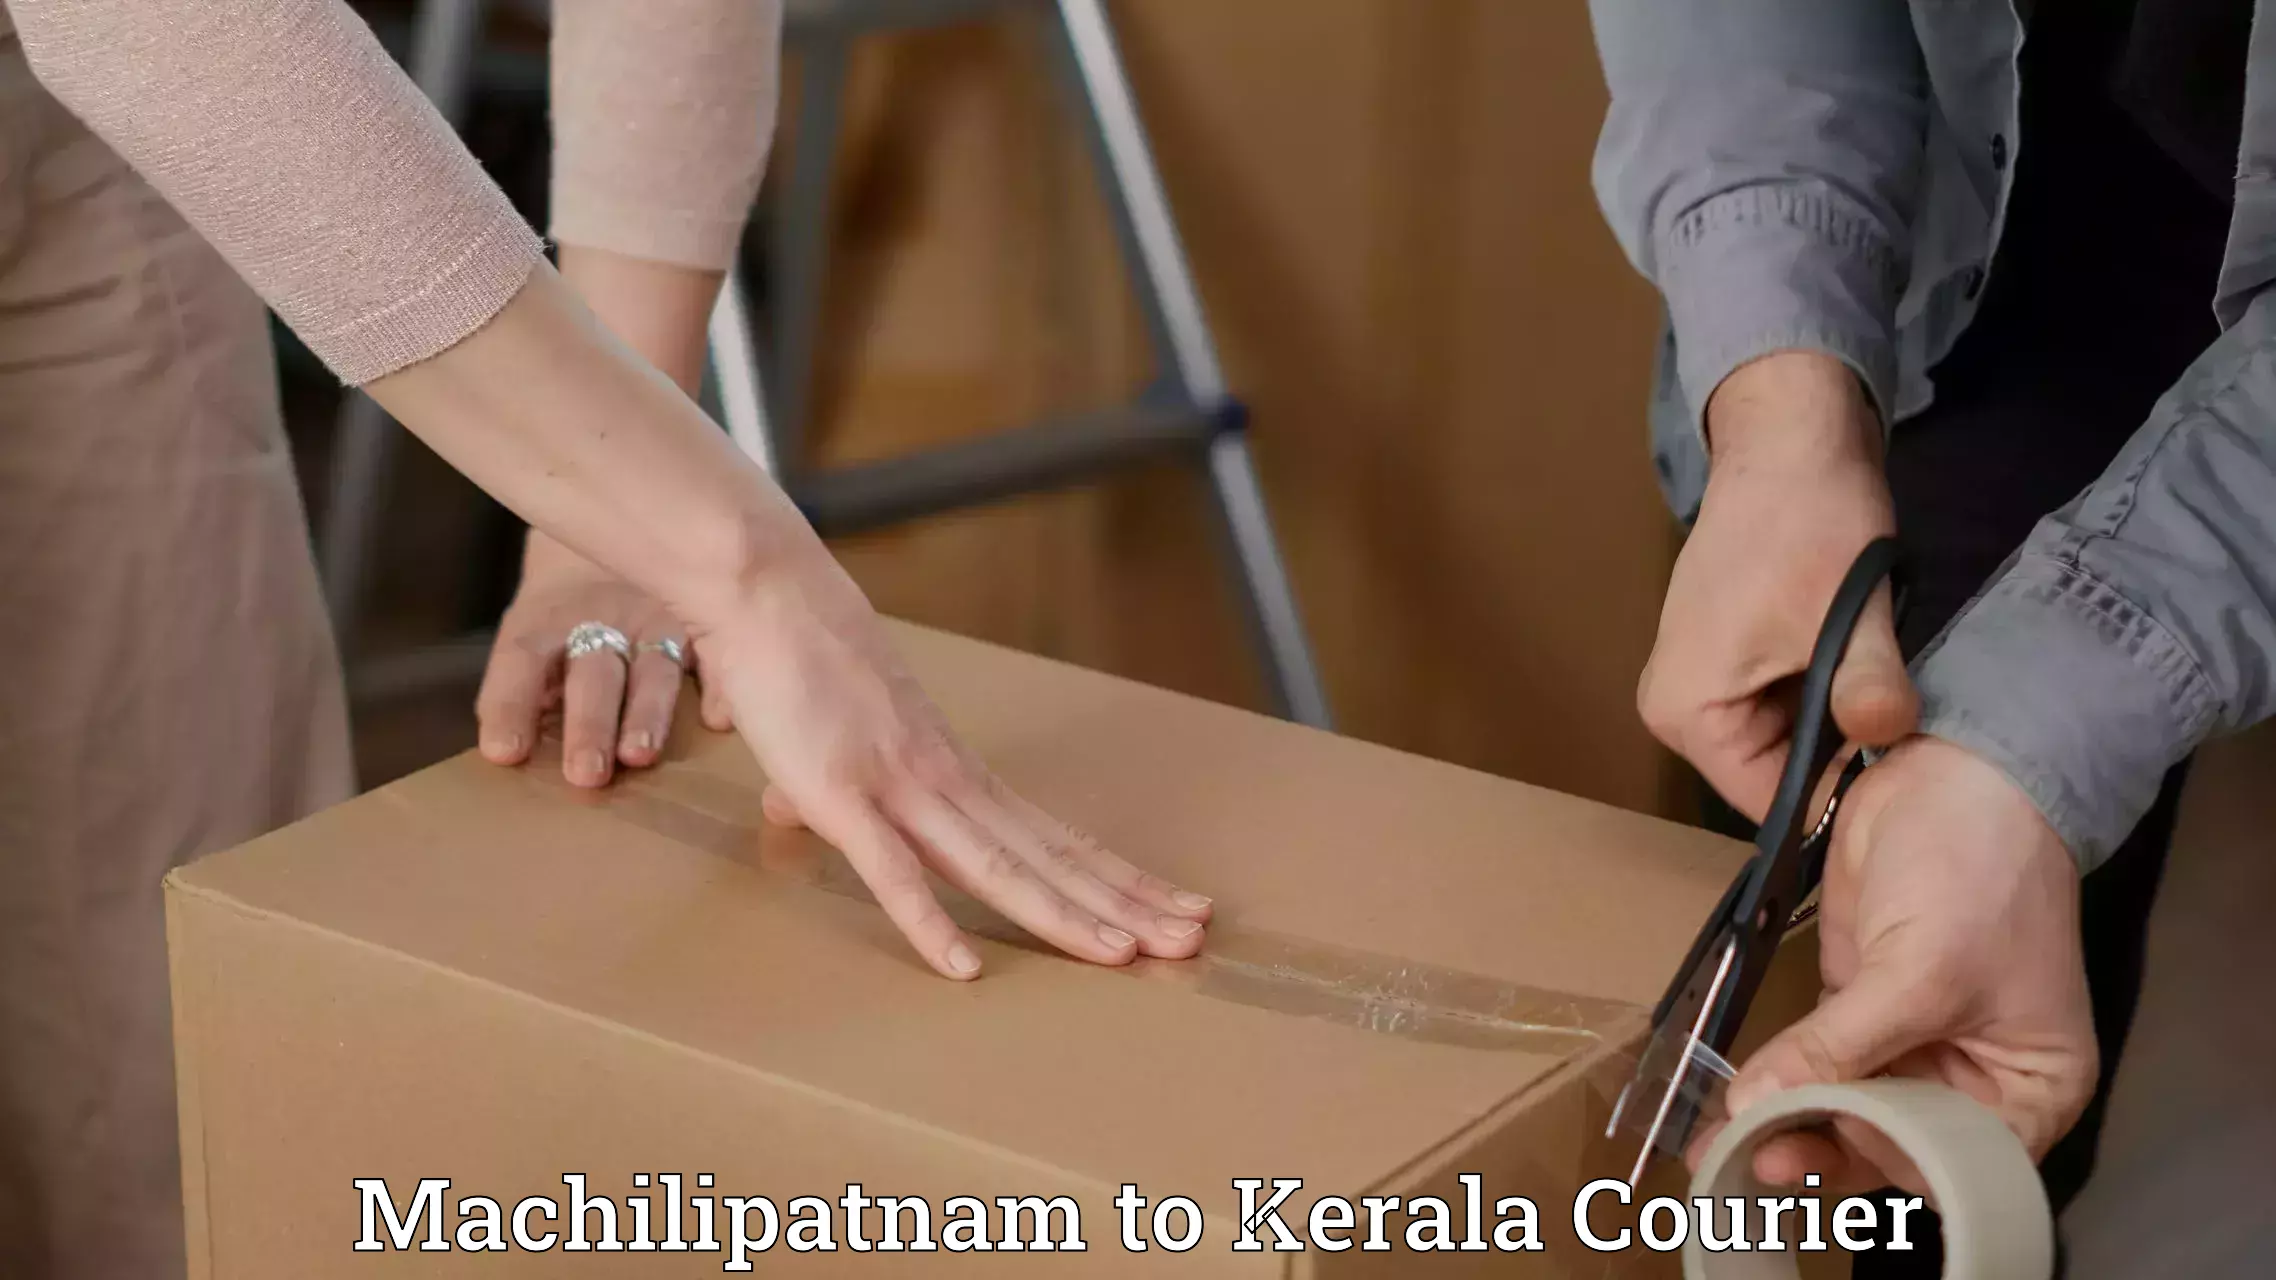 Cargo delivery service Machilipatnam to Cochin